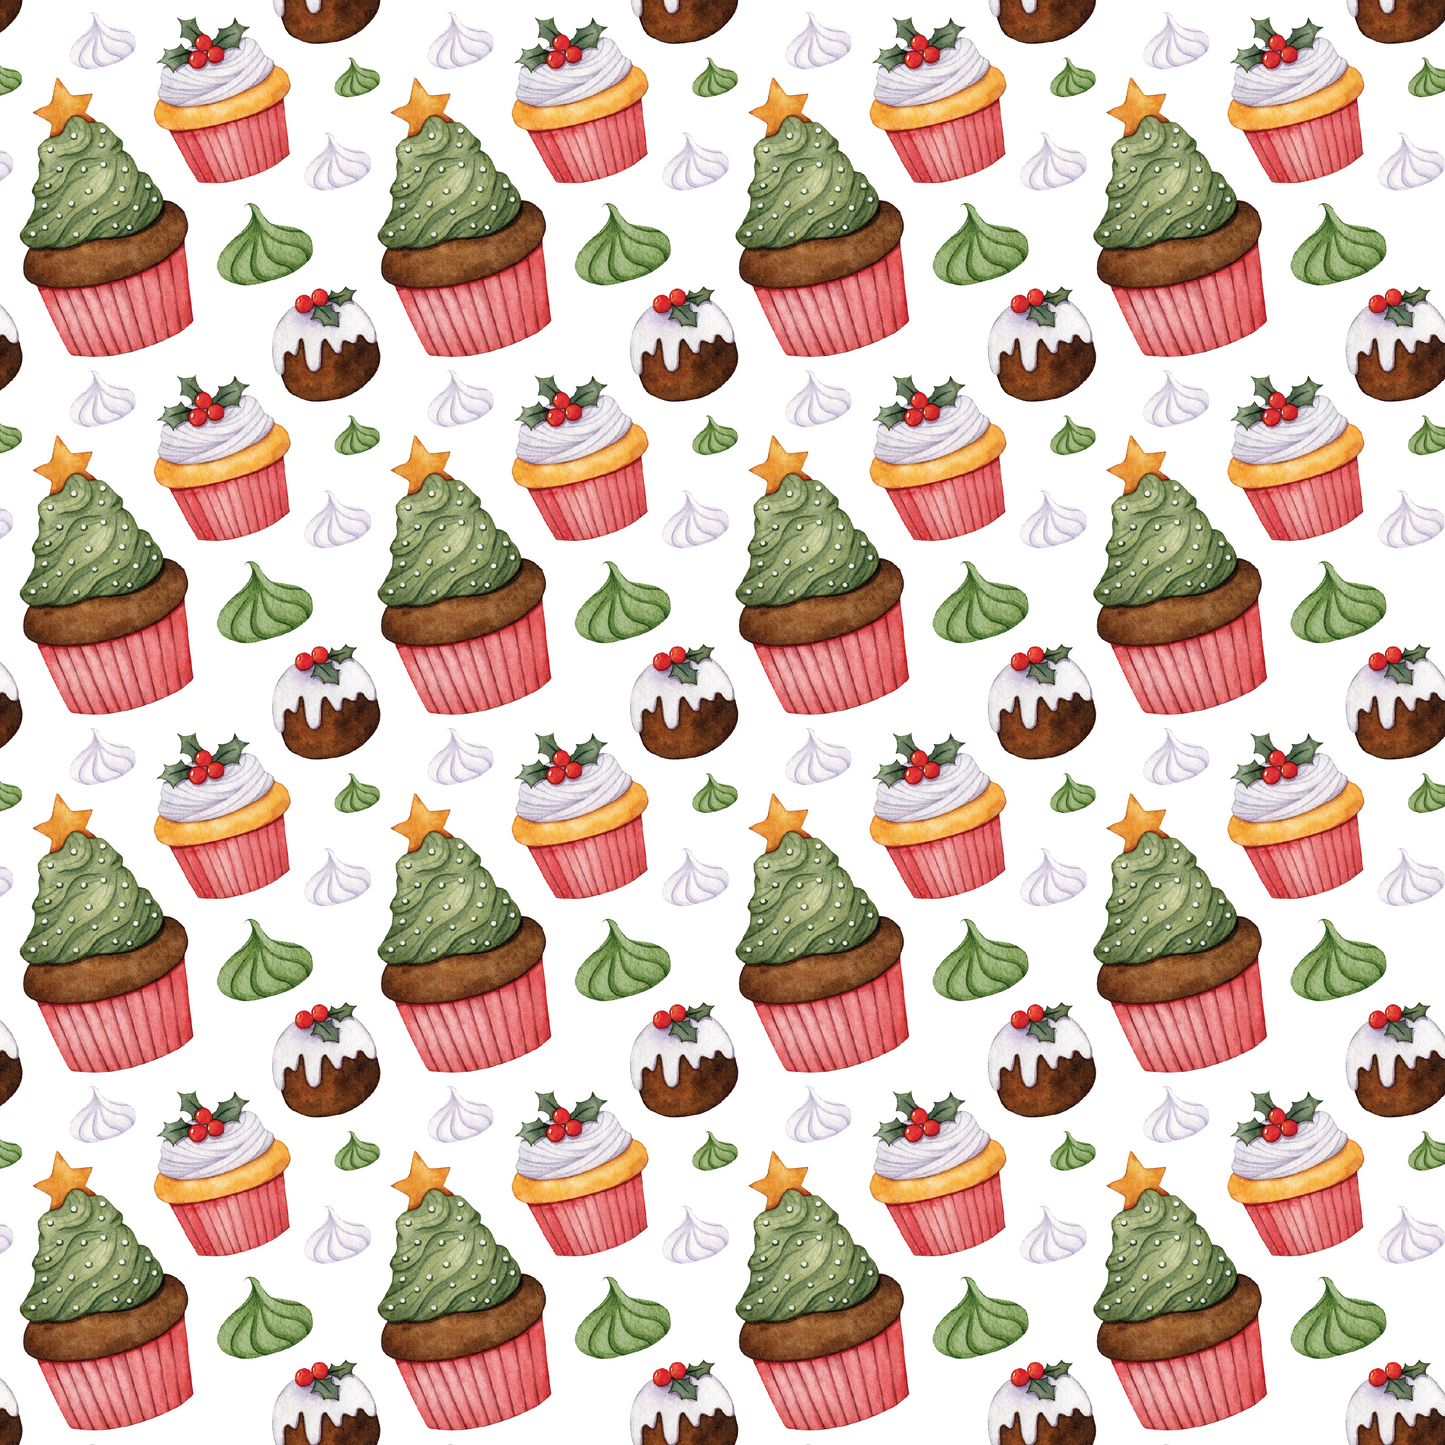 Bonbons de Noël - Cupcakes 002